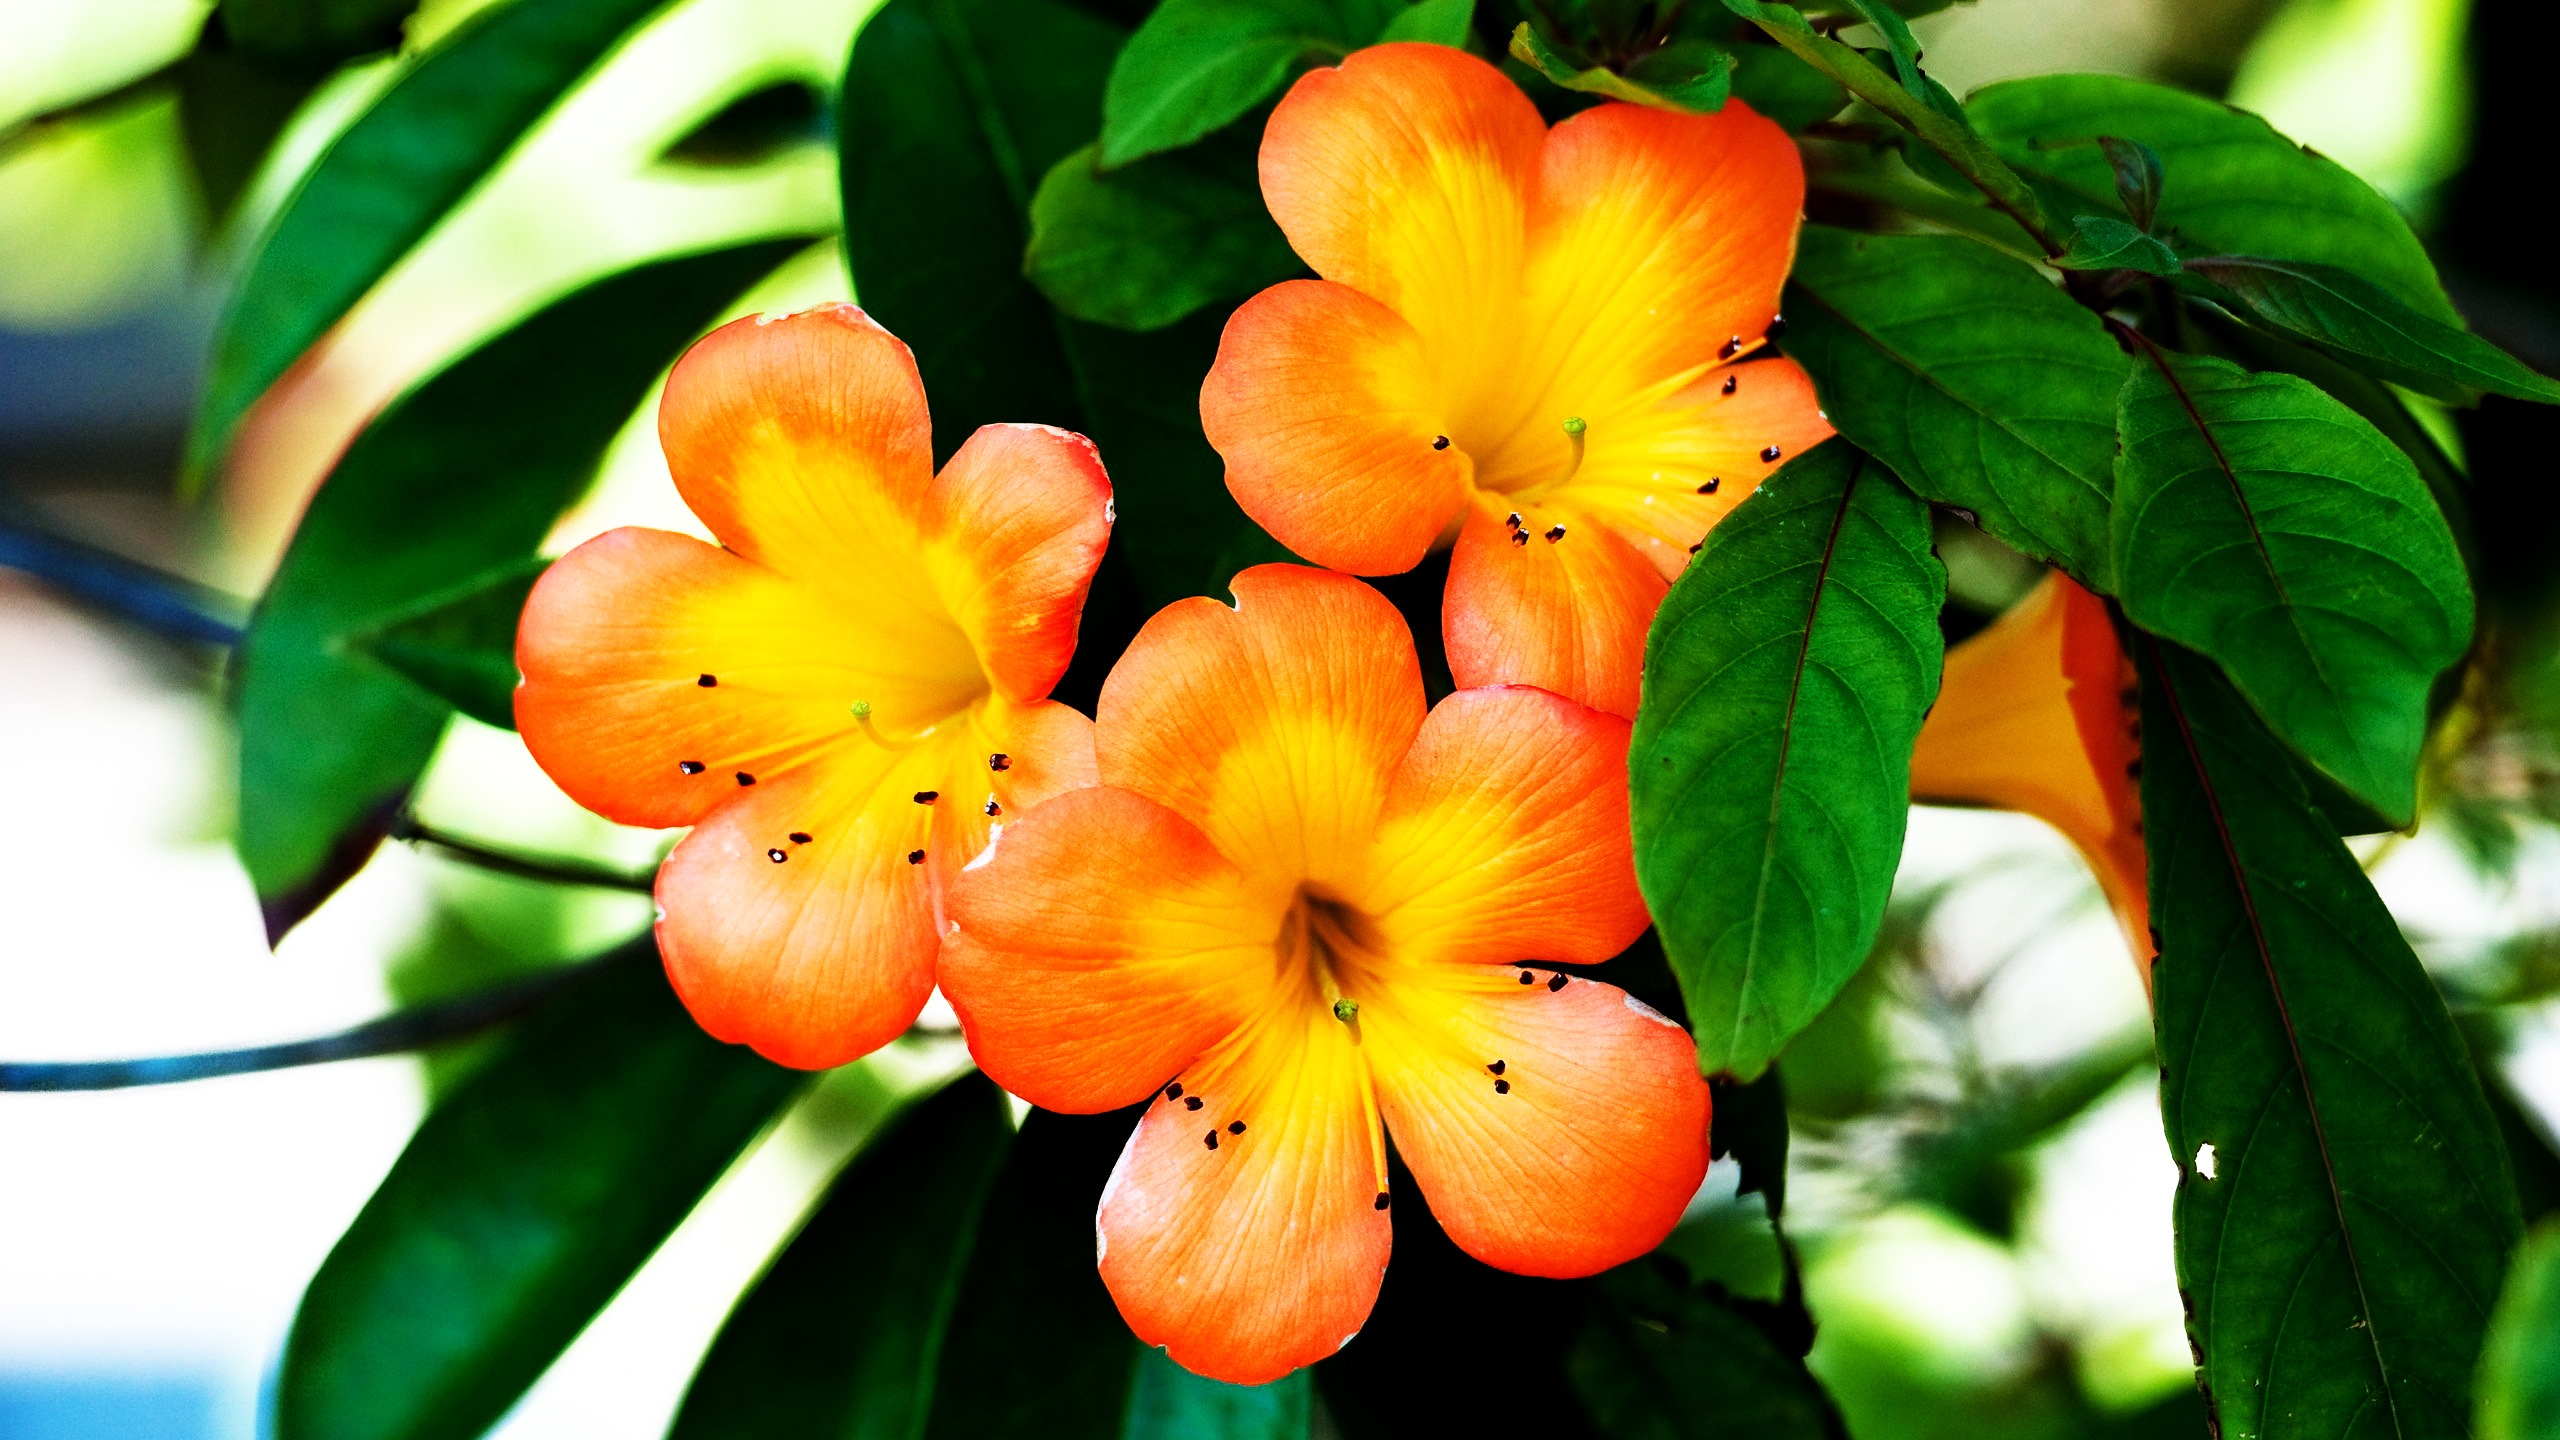 Spring Orange Flower for 2560x1440 HDTV resolution